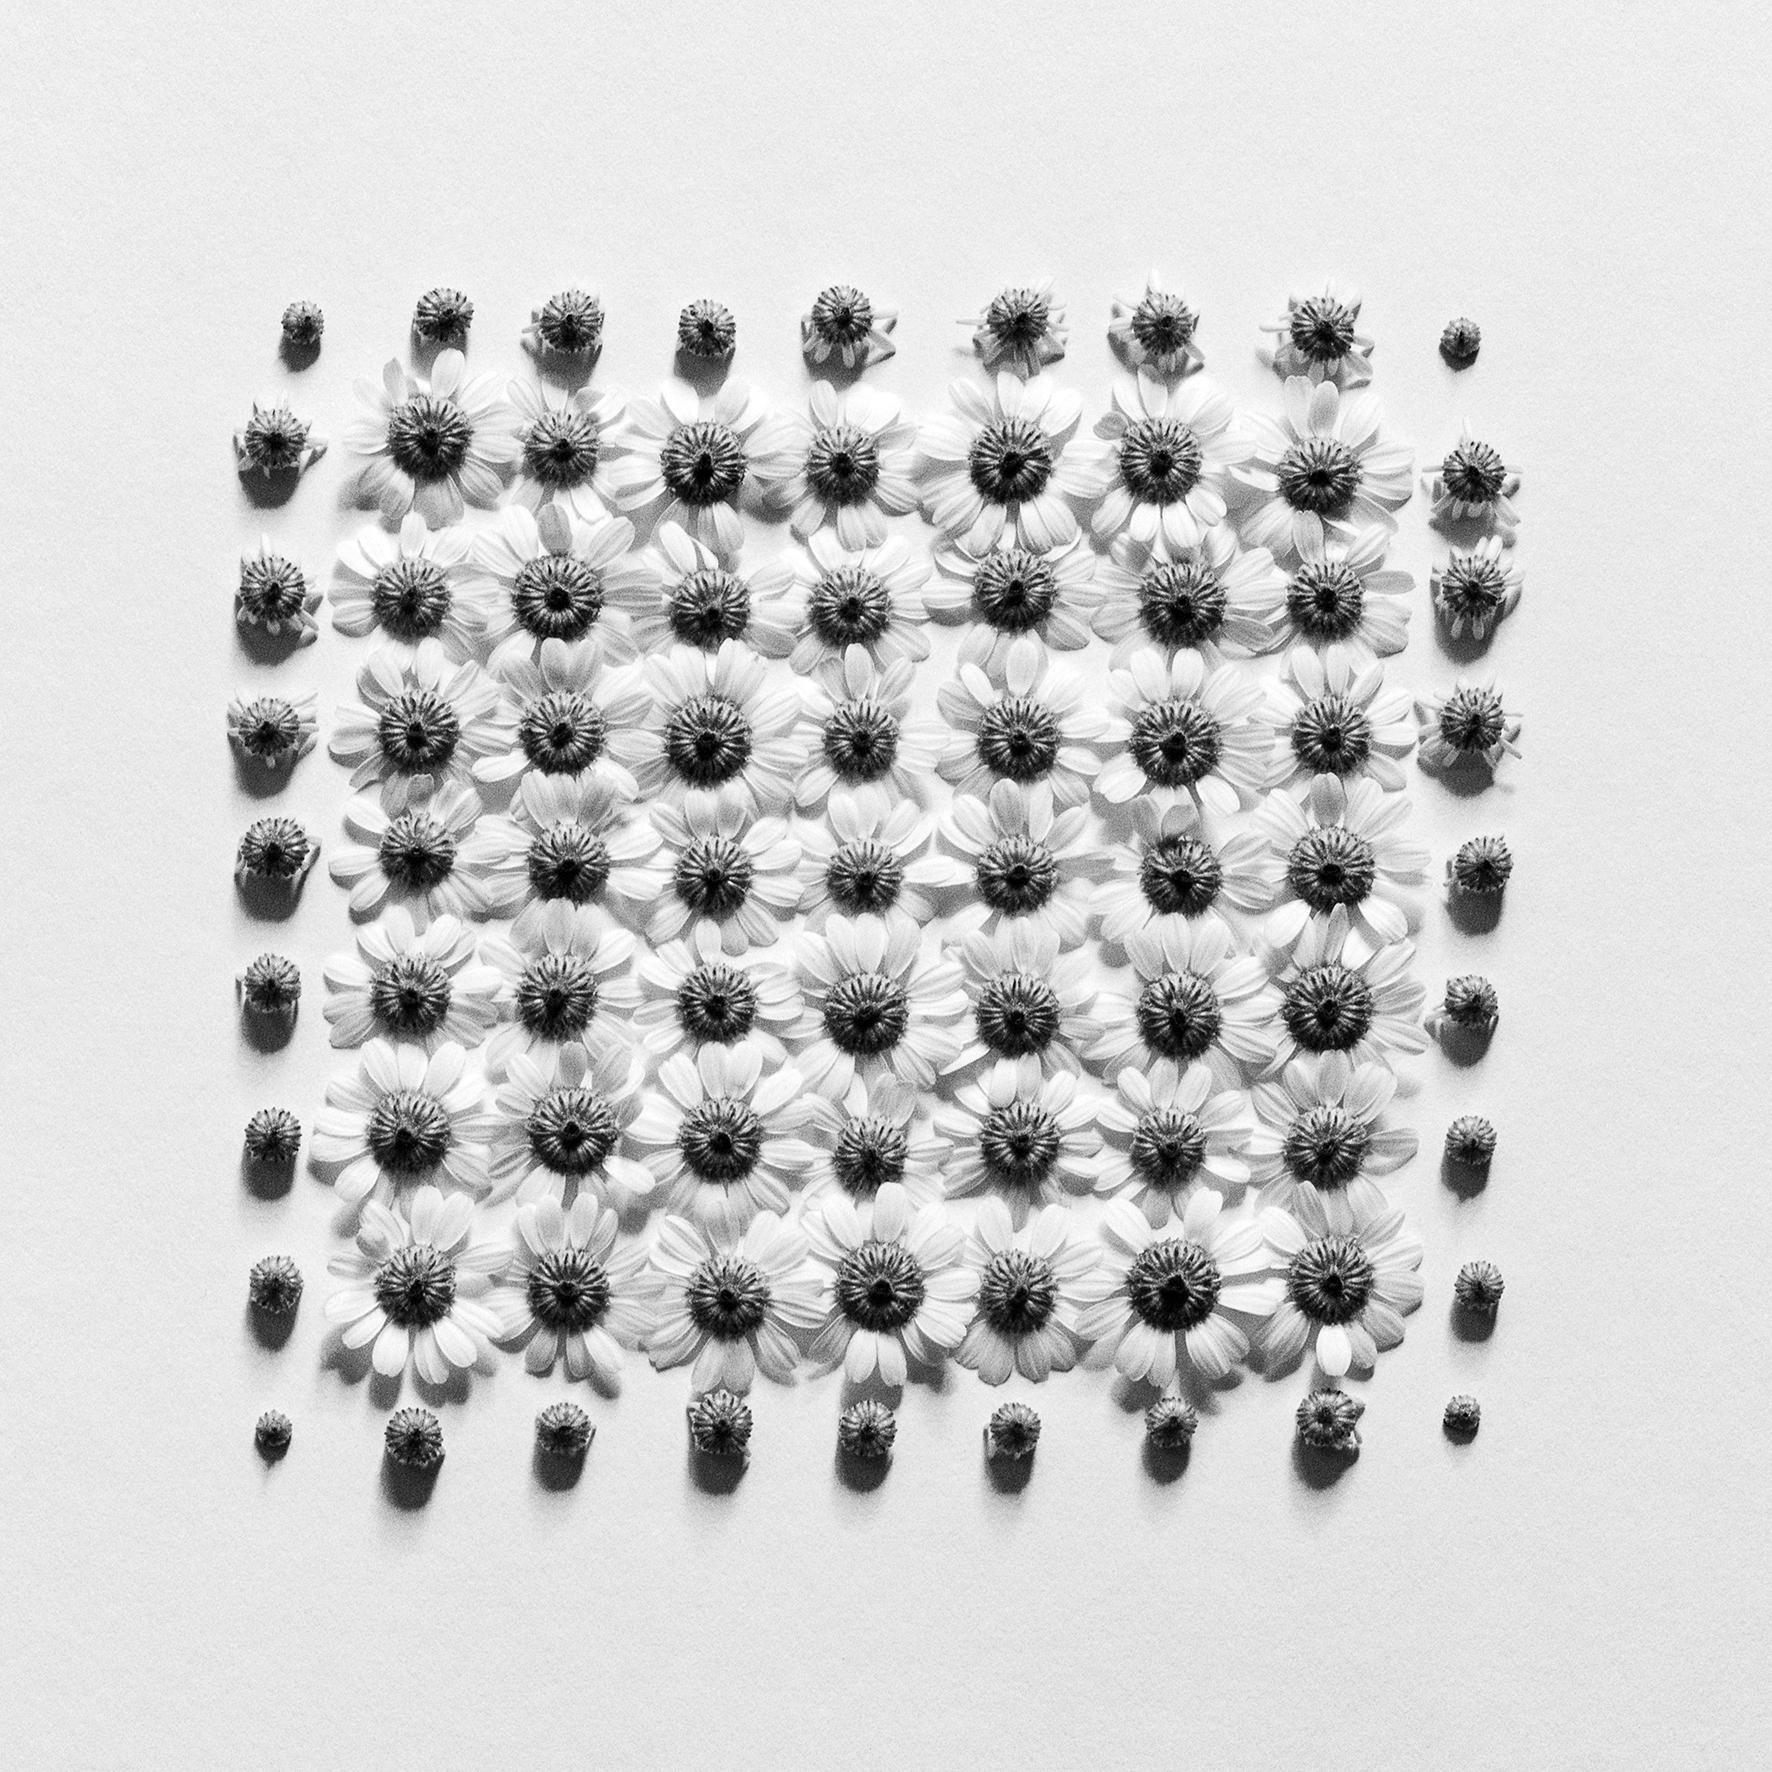 Ramunės No.2- Abstrakte analoge Schwarz-Weiß-Blumenfotografie, Ausgabe von 5